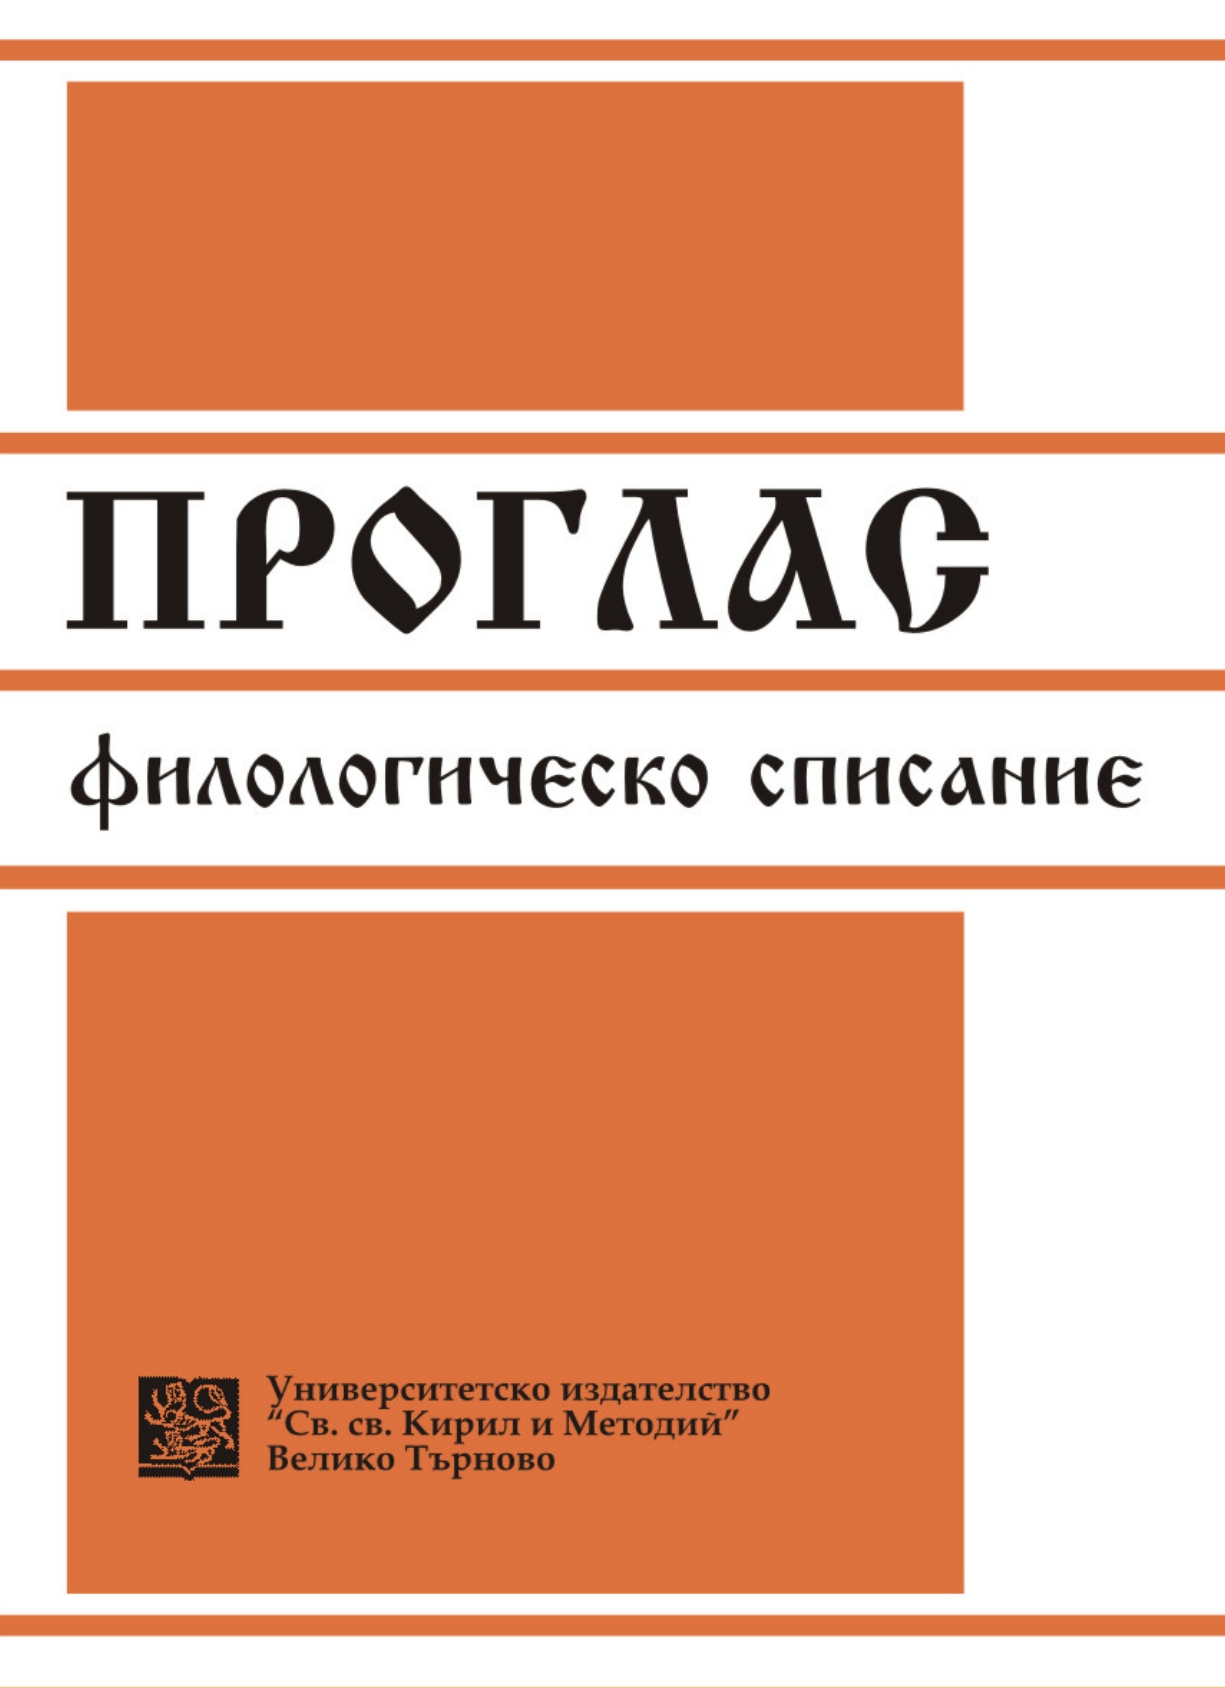 World Symposium on Dostoyevsky’s Literary Heritage Cover Image